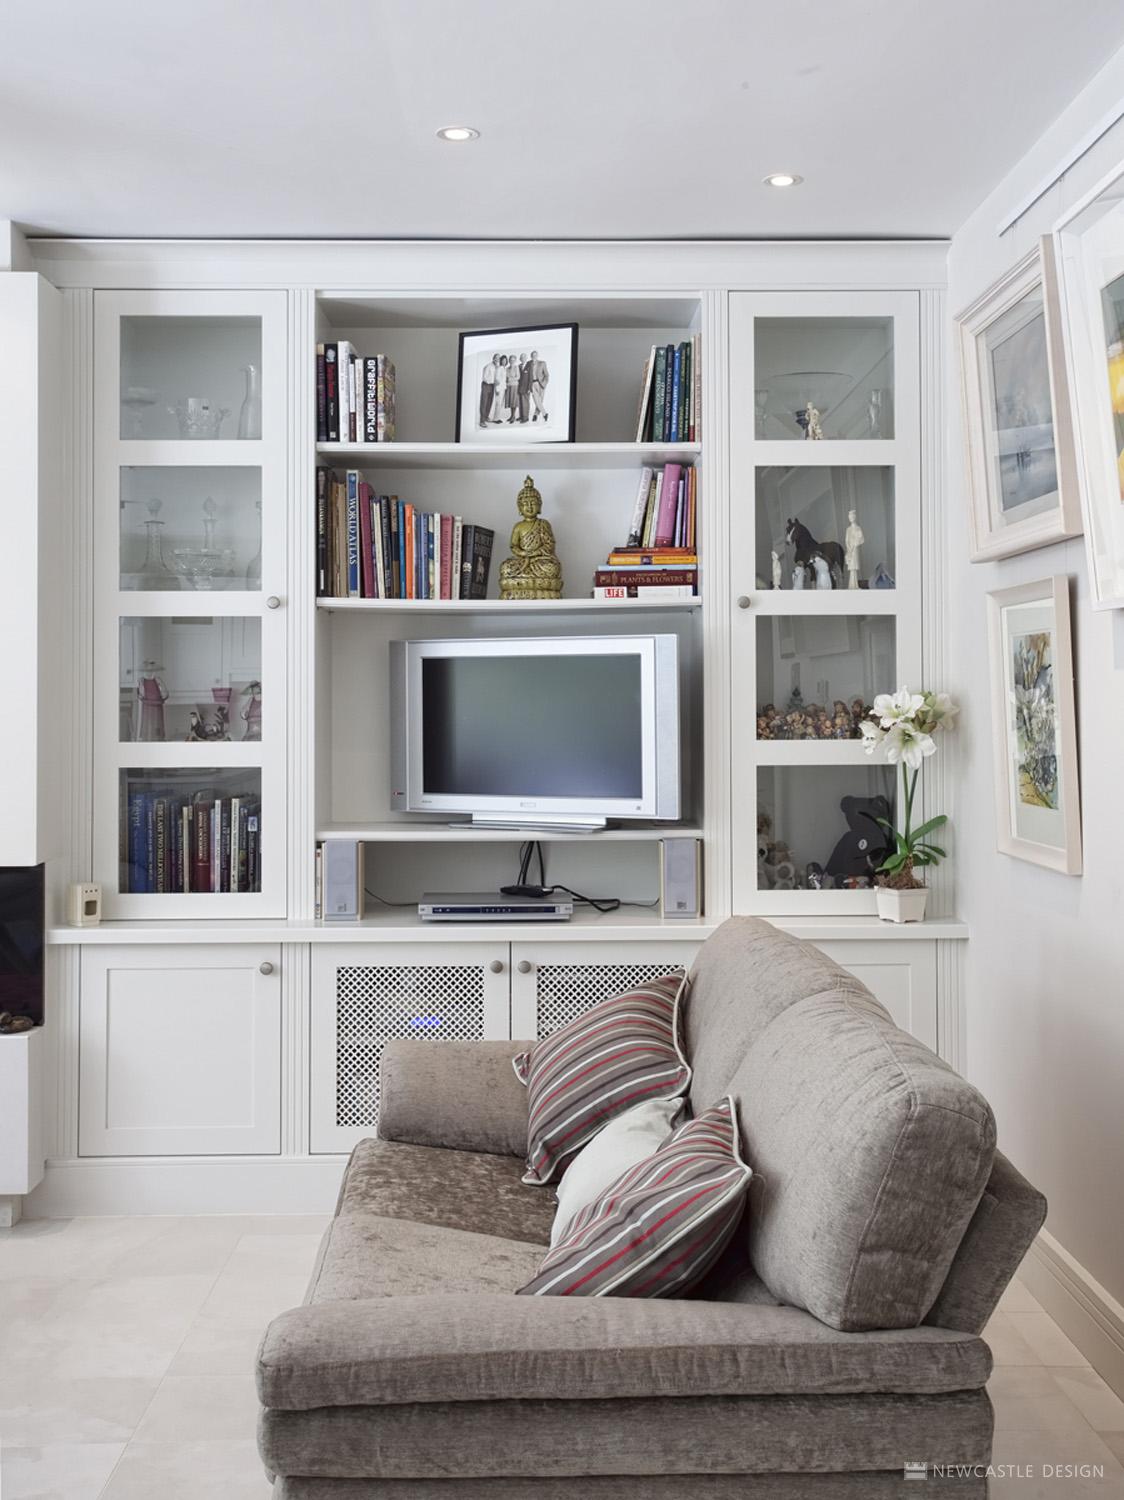 Study & Living Room Furniture | Interior Design Ideas